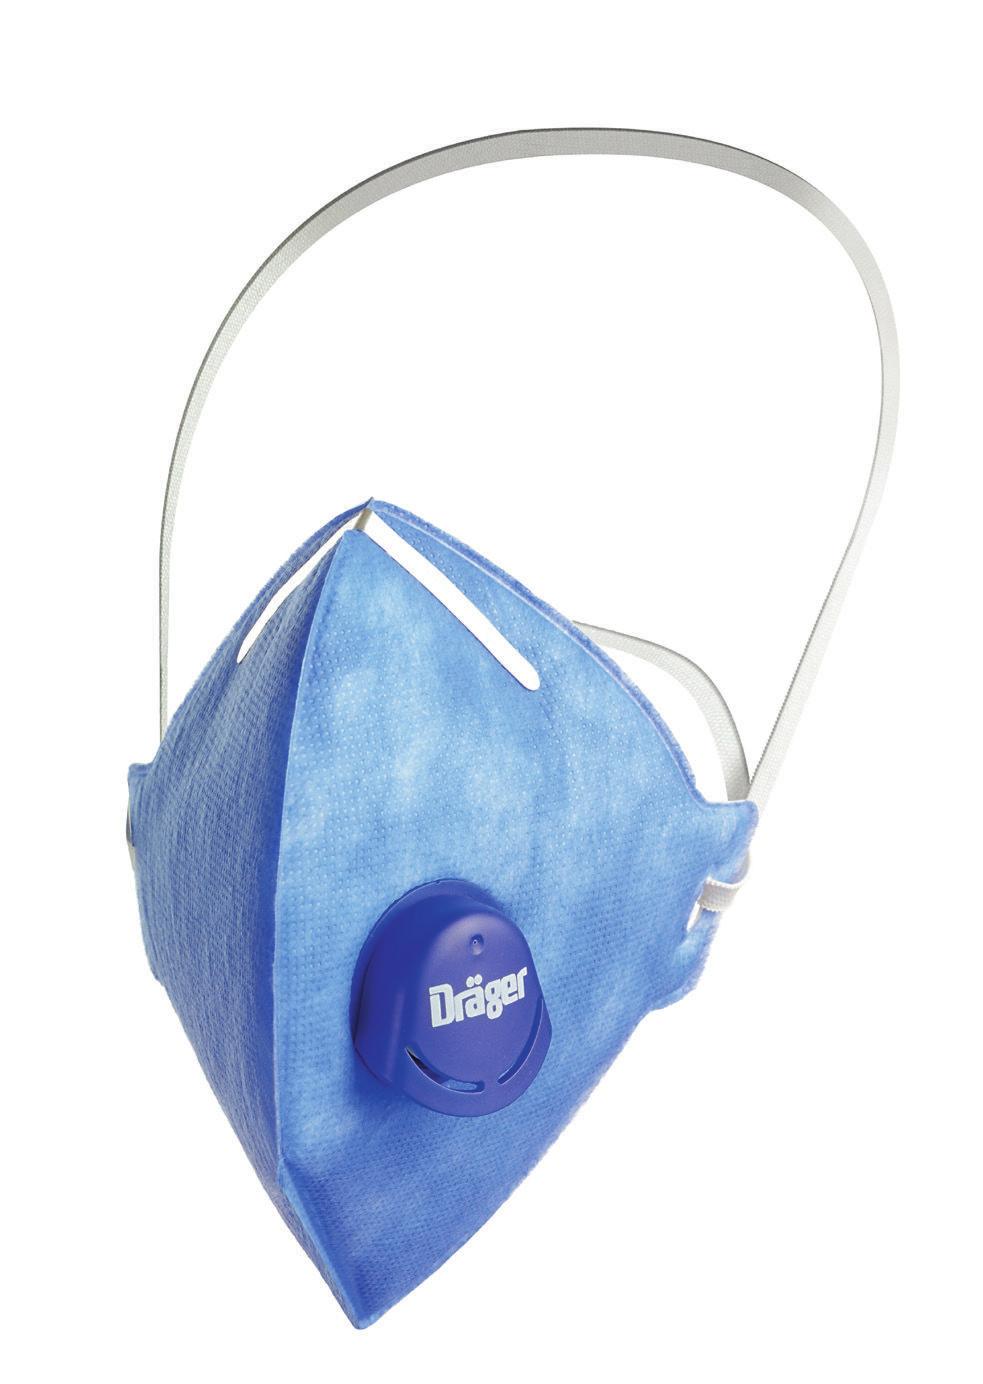 Dräger X-plore 1700 Máscara para filtragem de partículas Respire bem, fique seguro: O Dräger X-plore 1700 torna a respiração fácil e confortável O material filtrante CoolSAFE combina de forma ideal